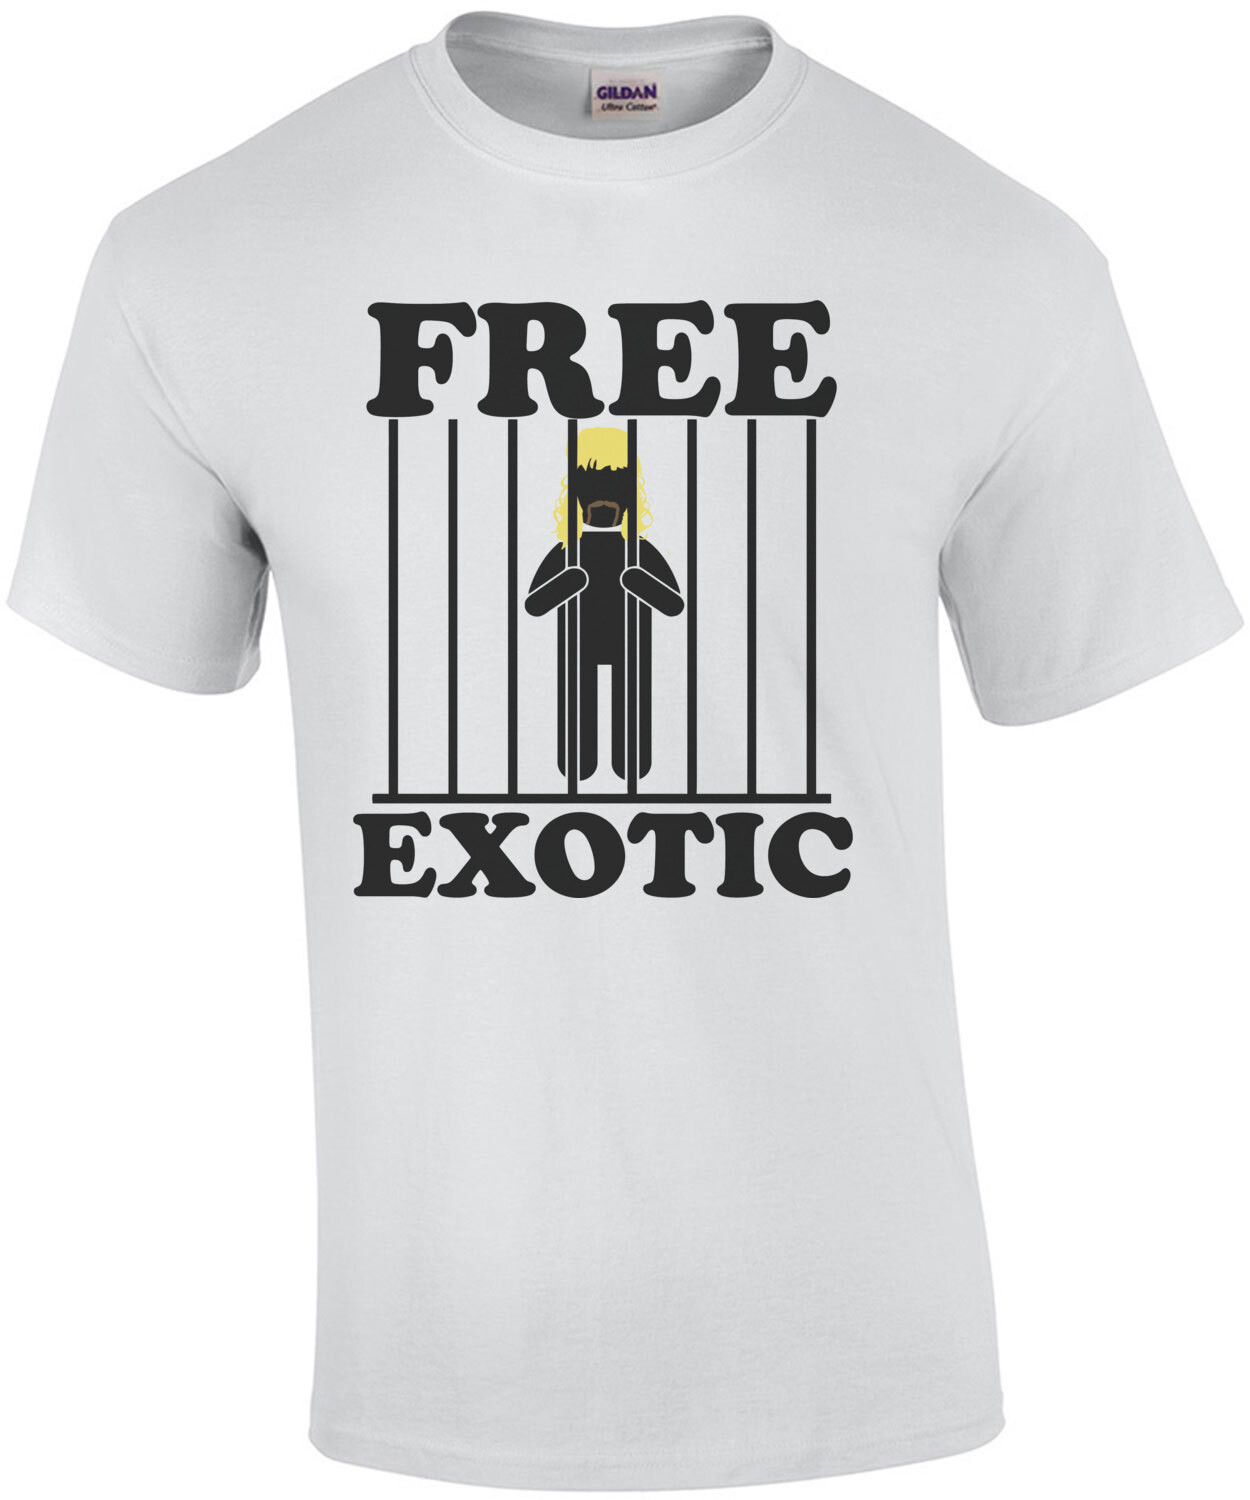 Free Joe Exotic Shirt - Tiger King Tees